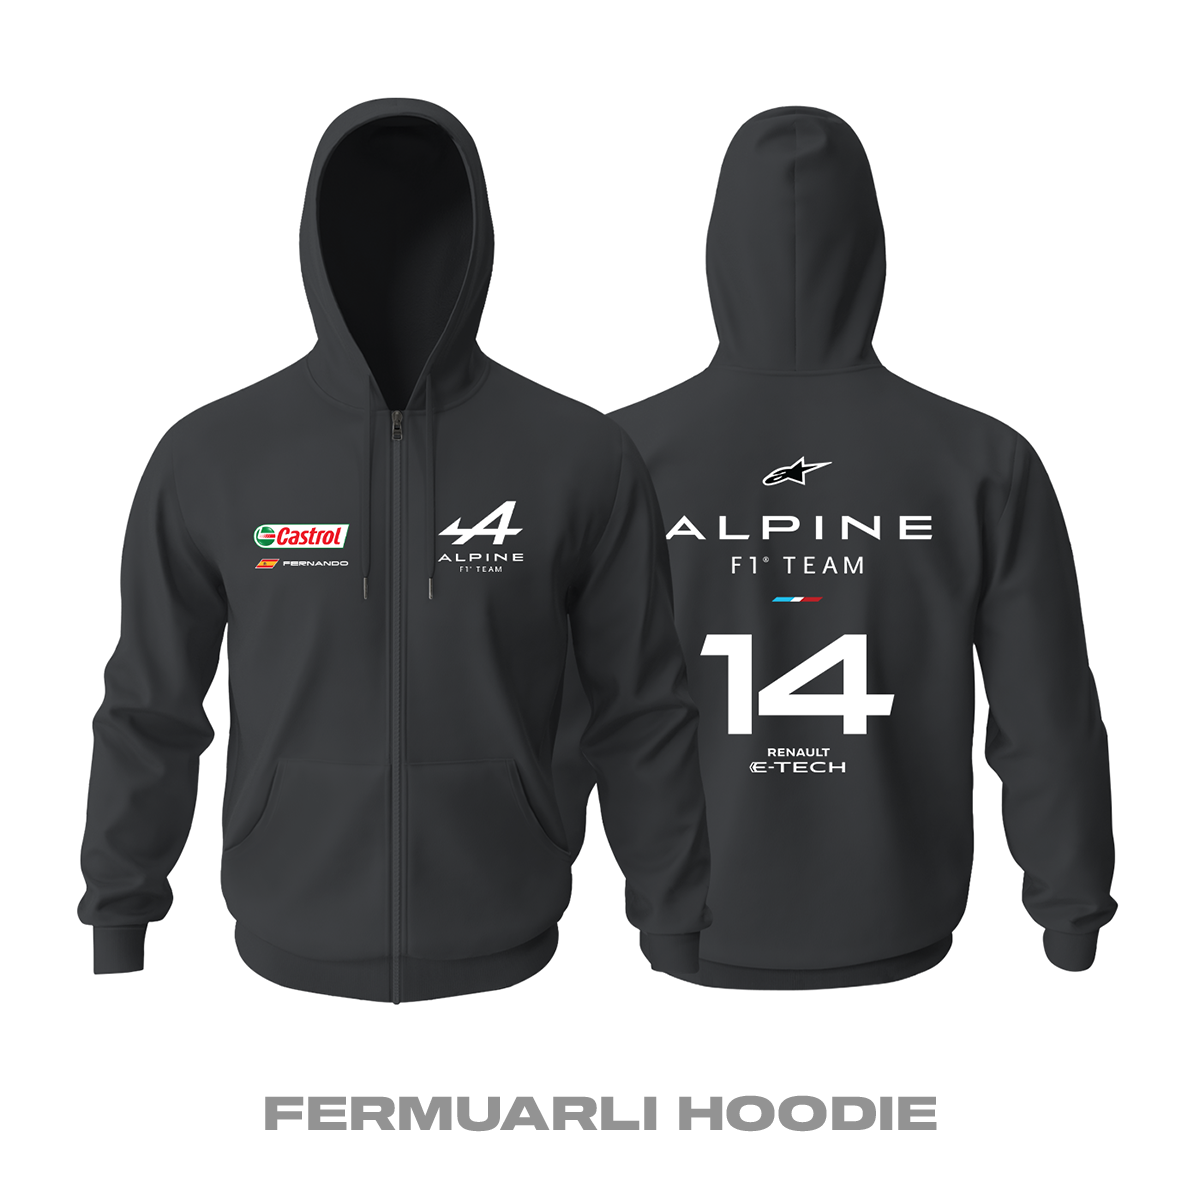 Alpine F1 Team: Black Edition 2021 Fermuarlı Kapüşonlu Hoodie